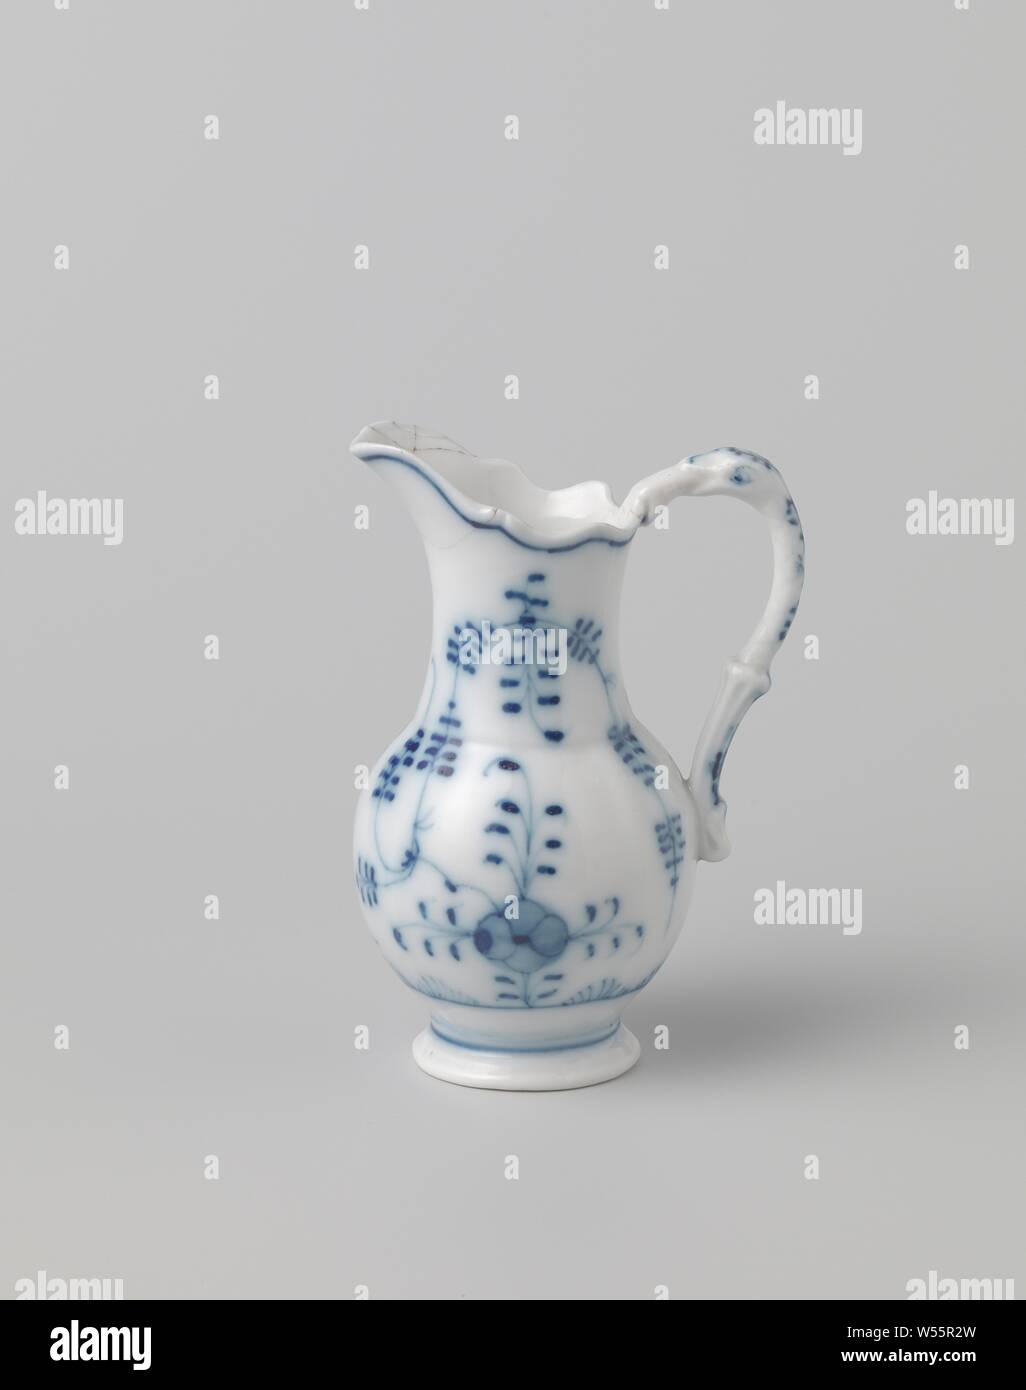 Lamp jug, Lamp jug with blue Saxon pattern, unnoticed, anonymous, c. 1775 - c. 1800, w 10.5 cm h 14.5 cm × d 8 cm Stock Photo